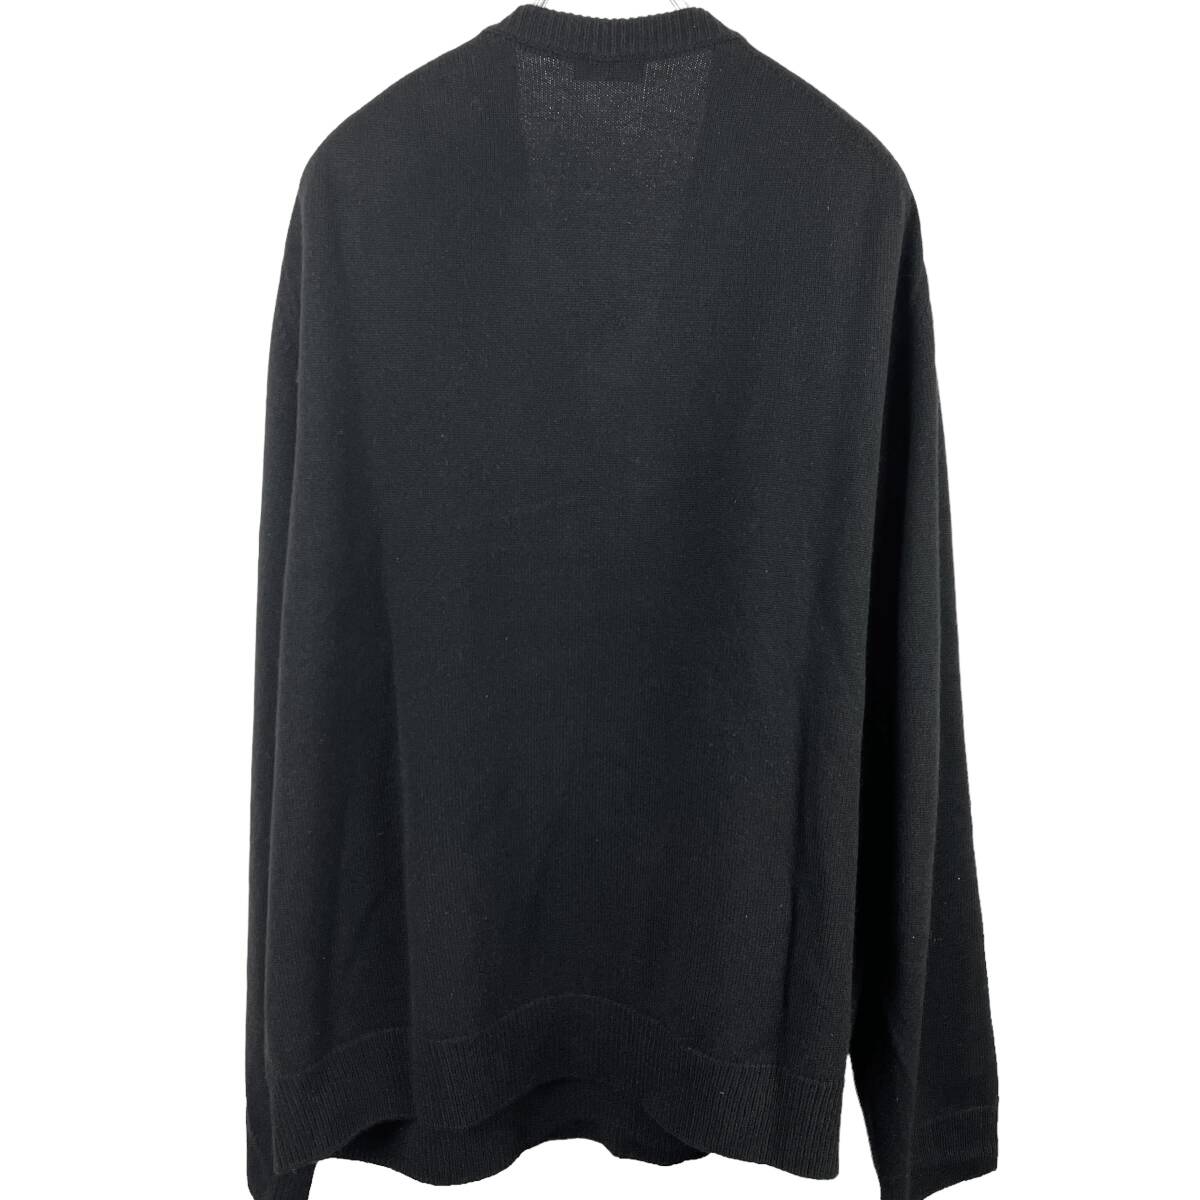 Celine(セリーヌ) Casual Cashmere Longsleeve Sweater Knit (black)